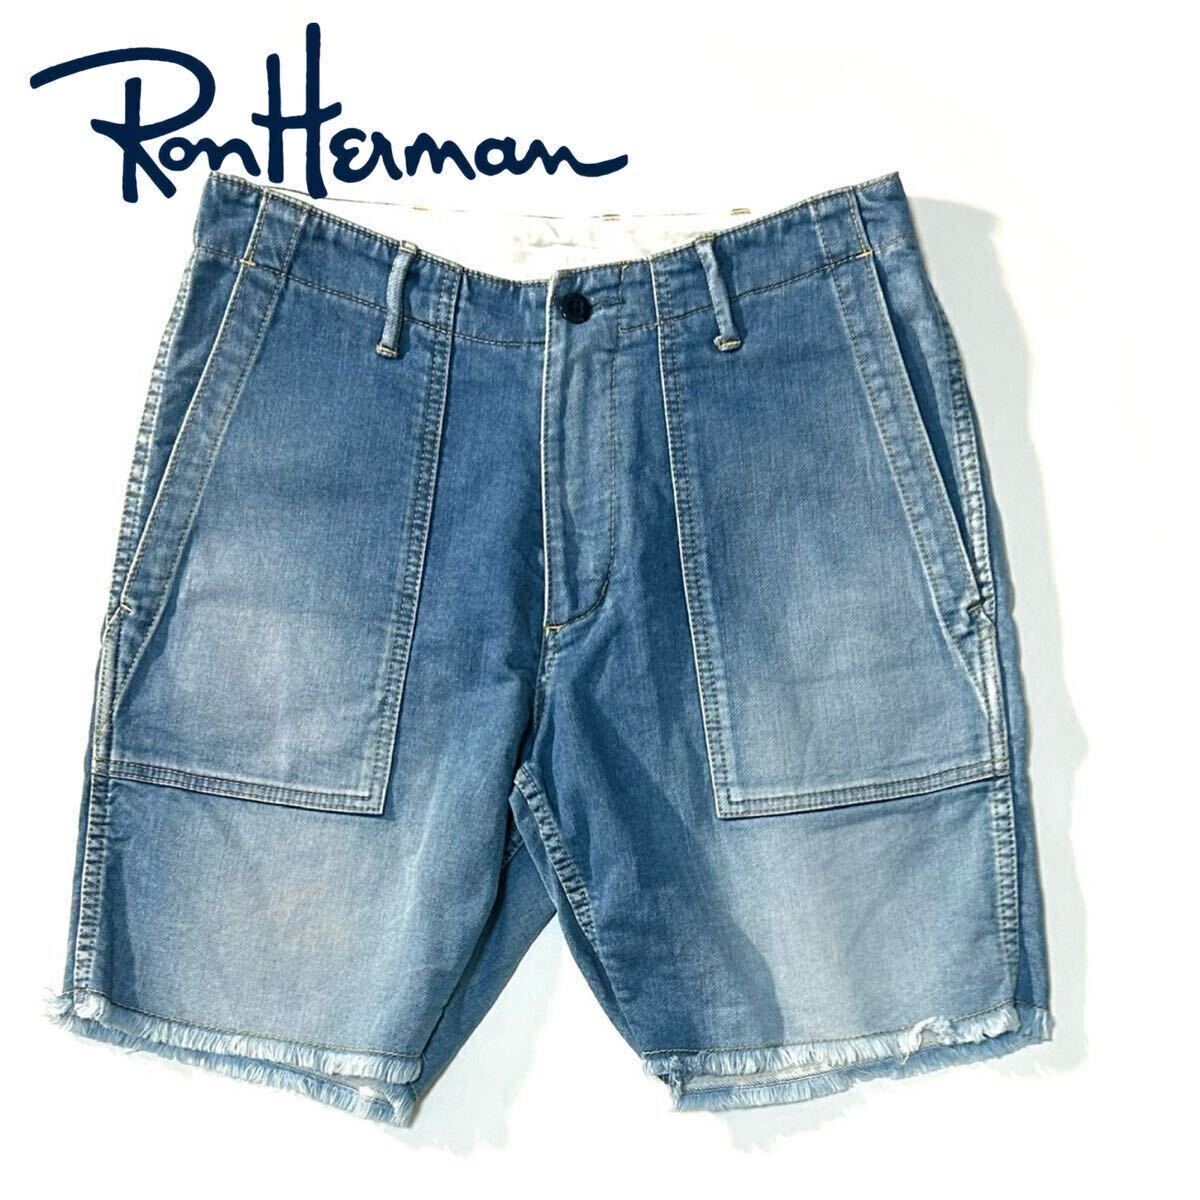 【Ron Herman】ヌケ感たっぷりな切りっぱなしデニムショーツ◎!!RHC ロンハーマン カットオフデニムショーツ ストレッチデニムショーツの画像2